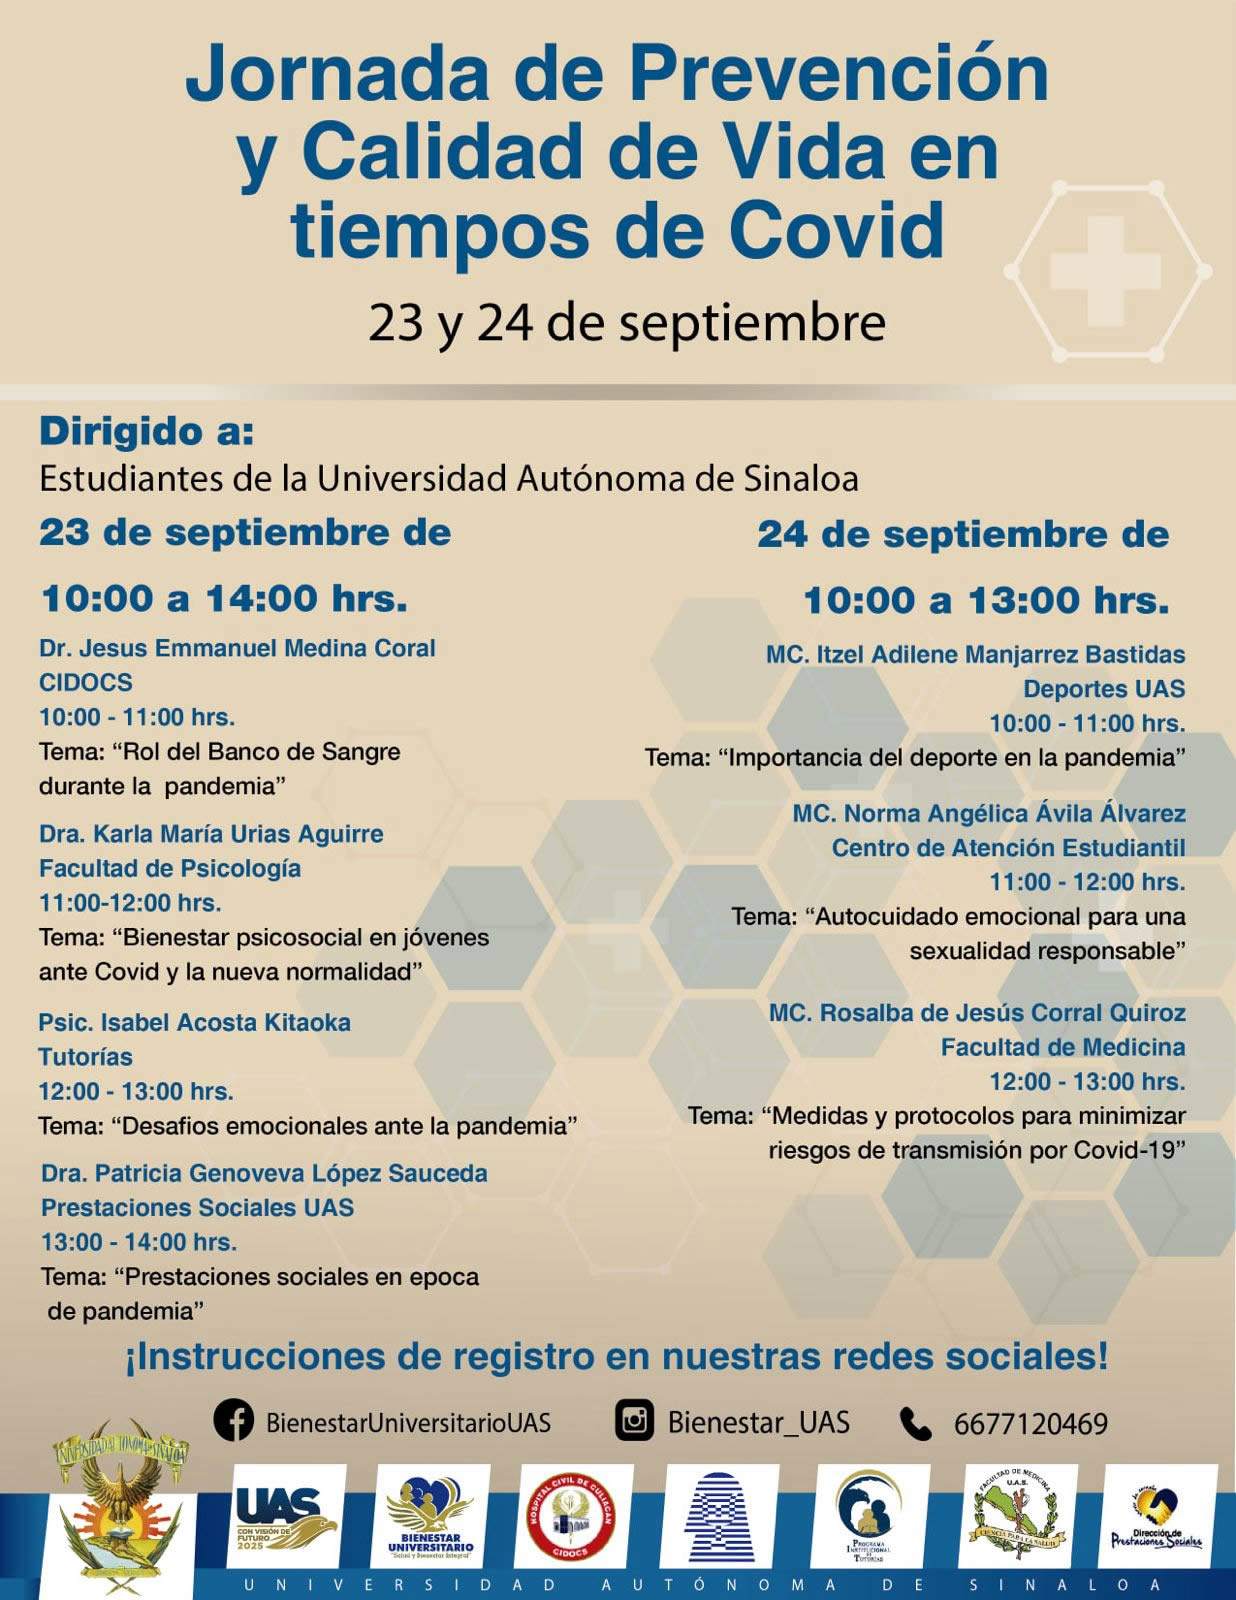 Jornada de prevención y calidad de vida en tiempos de Covid, 23 y 24 de septiembre de 2021